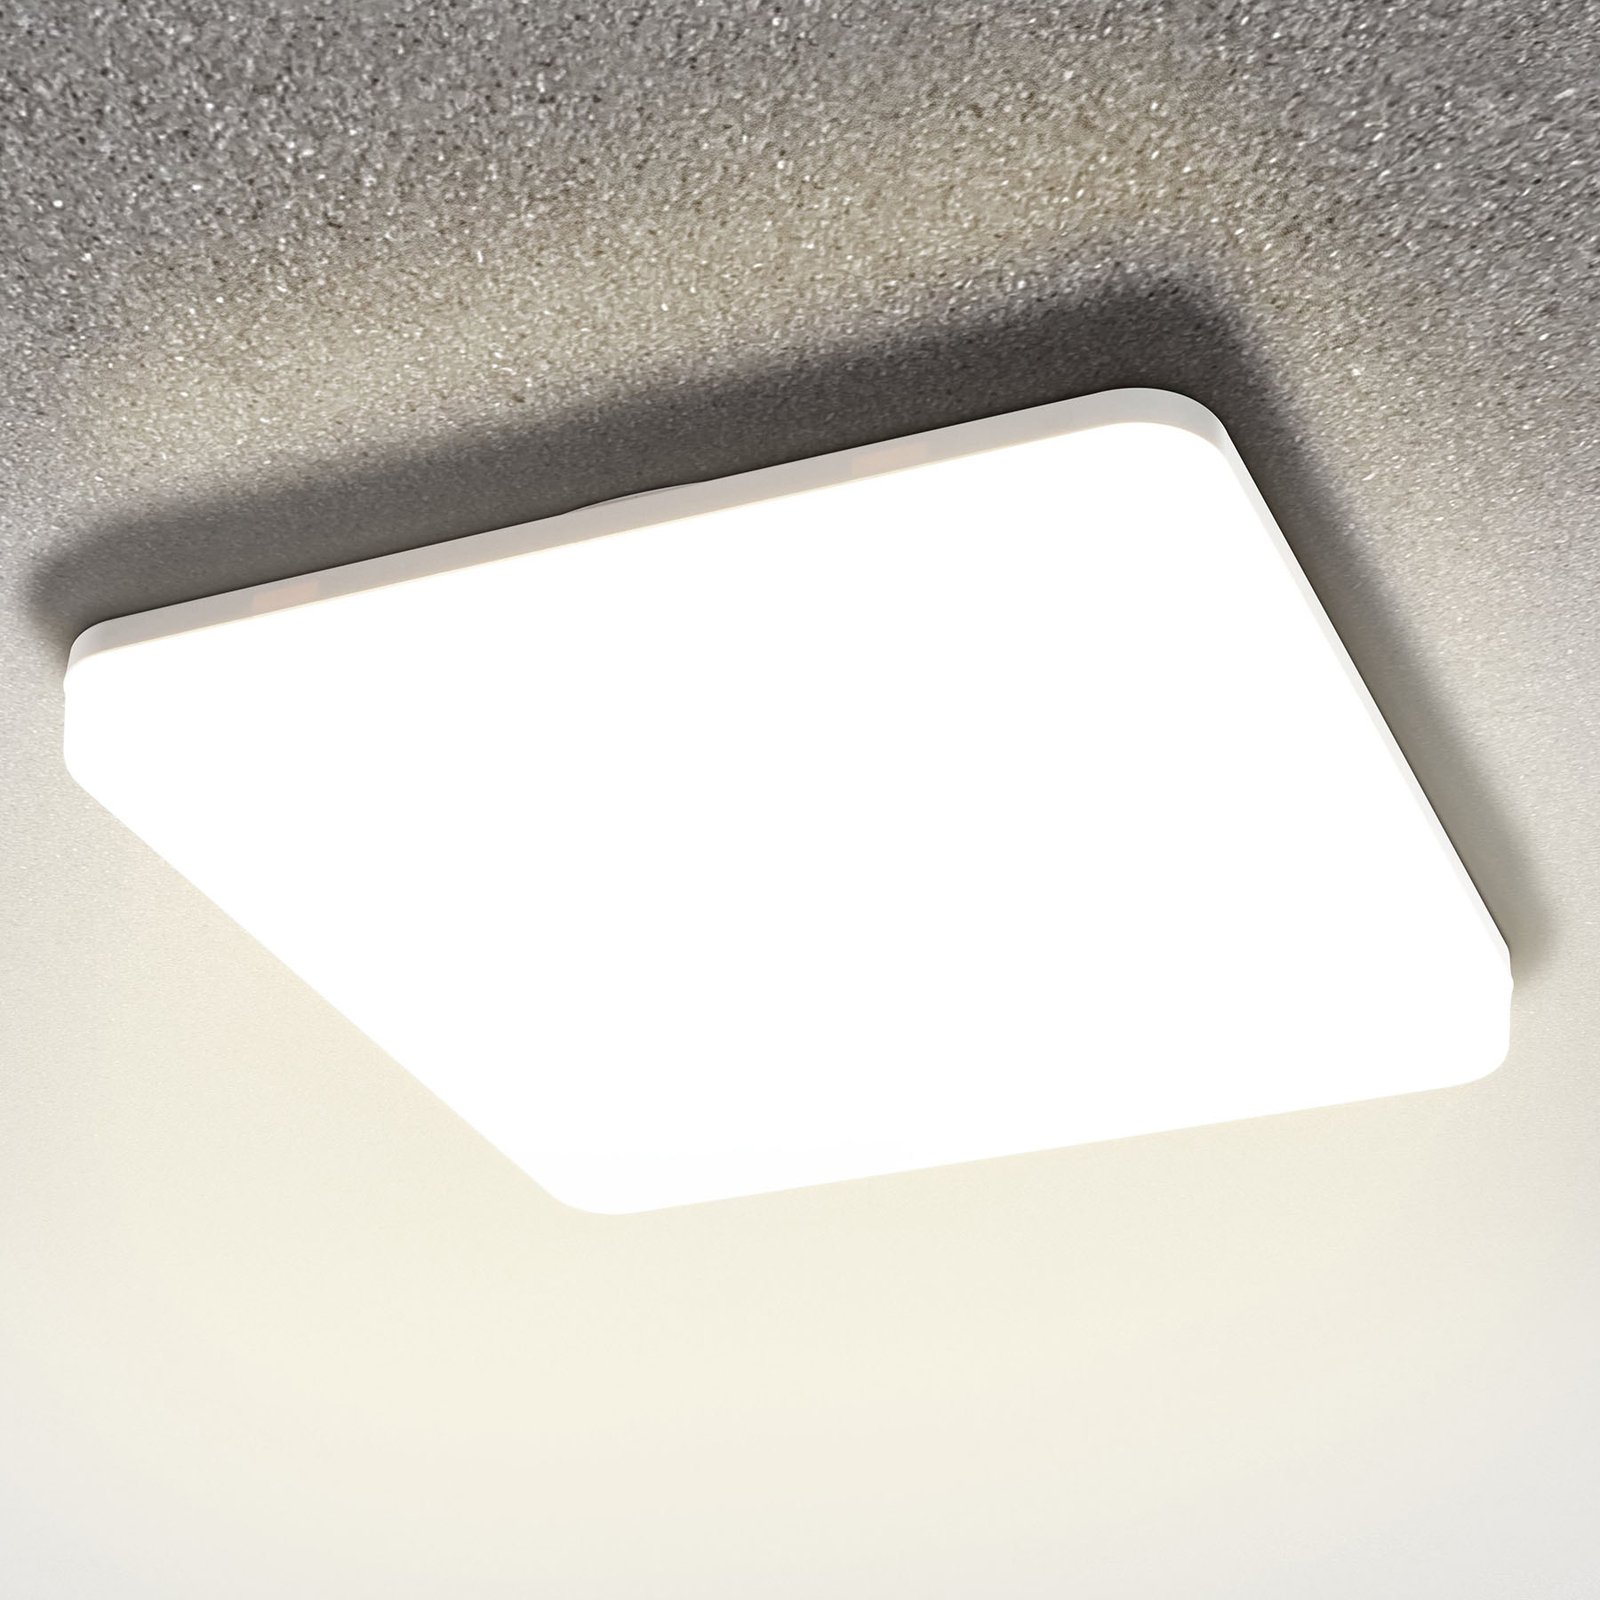 Pronto LED ceiling light, angular, 33 x 33 cm